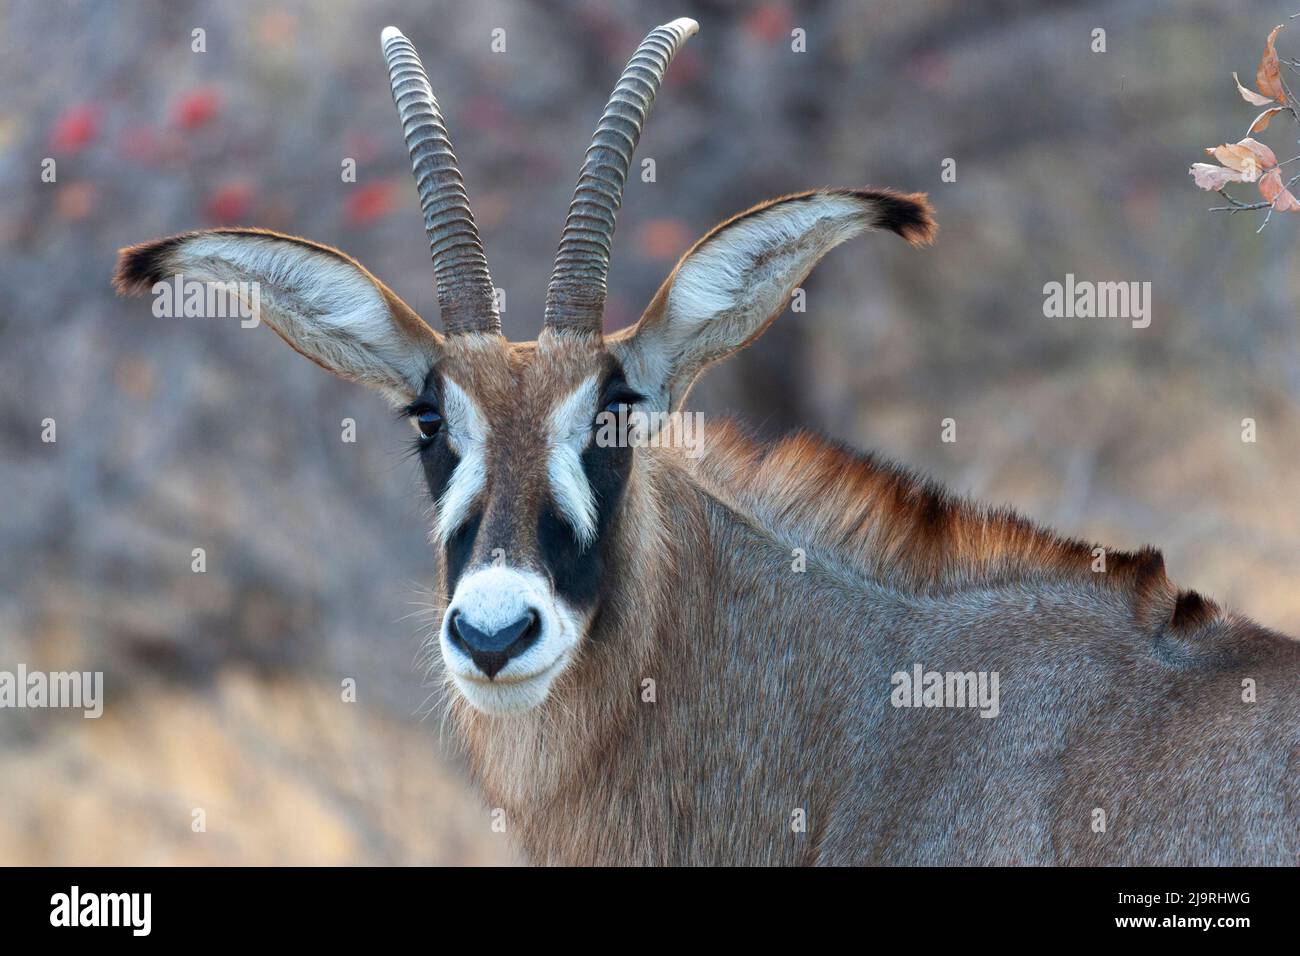 Afrique, Tanzanie. Photo d'un antilope roan. Banque D'Images